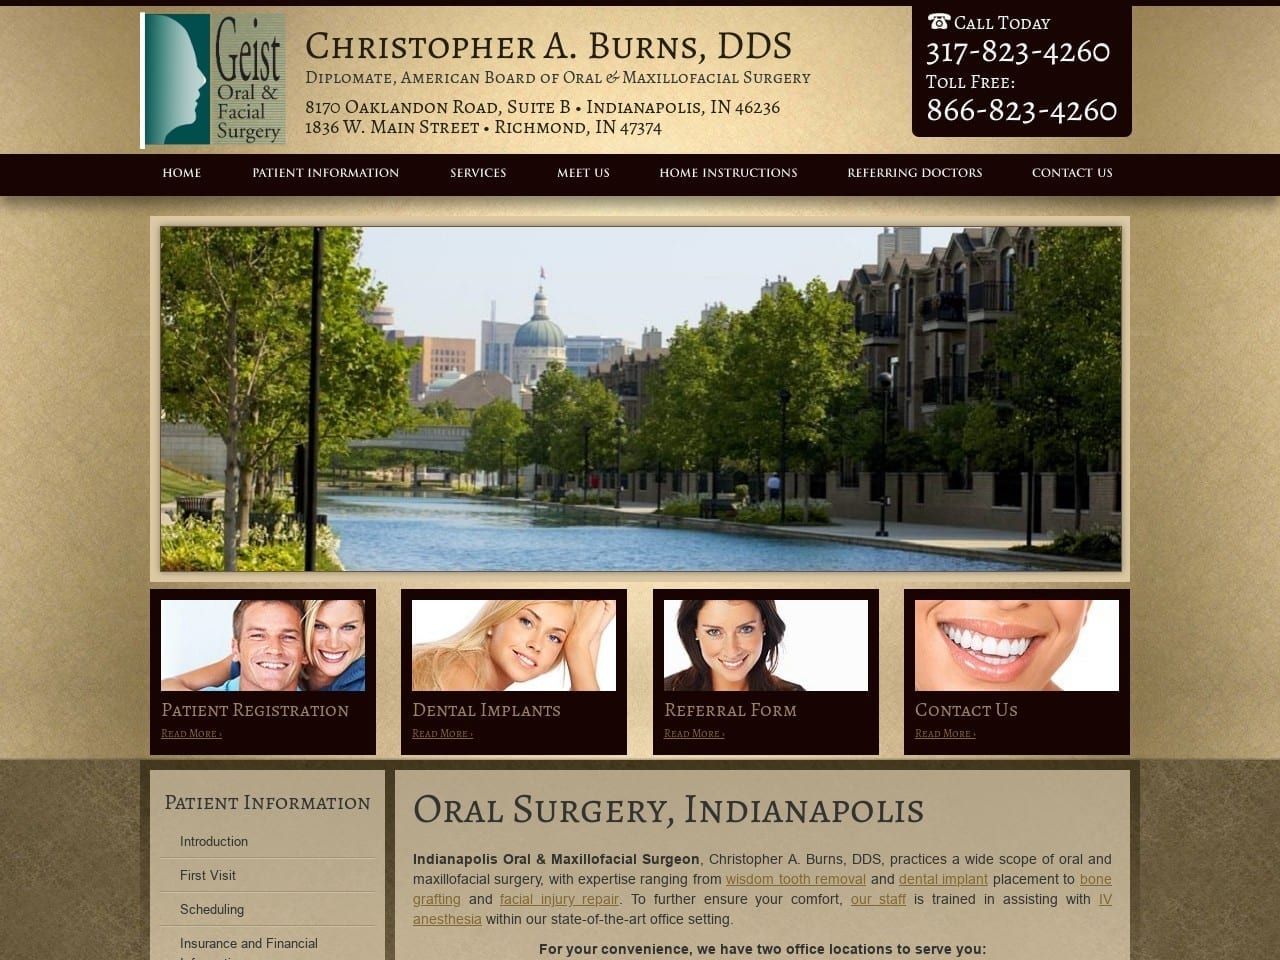 Geist Oral & Facial Surgery Website Screenshot from gofsindy.com